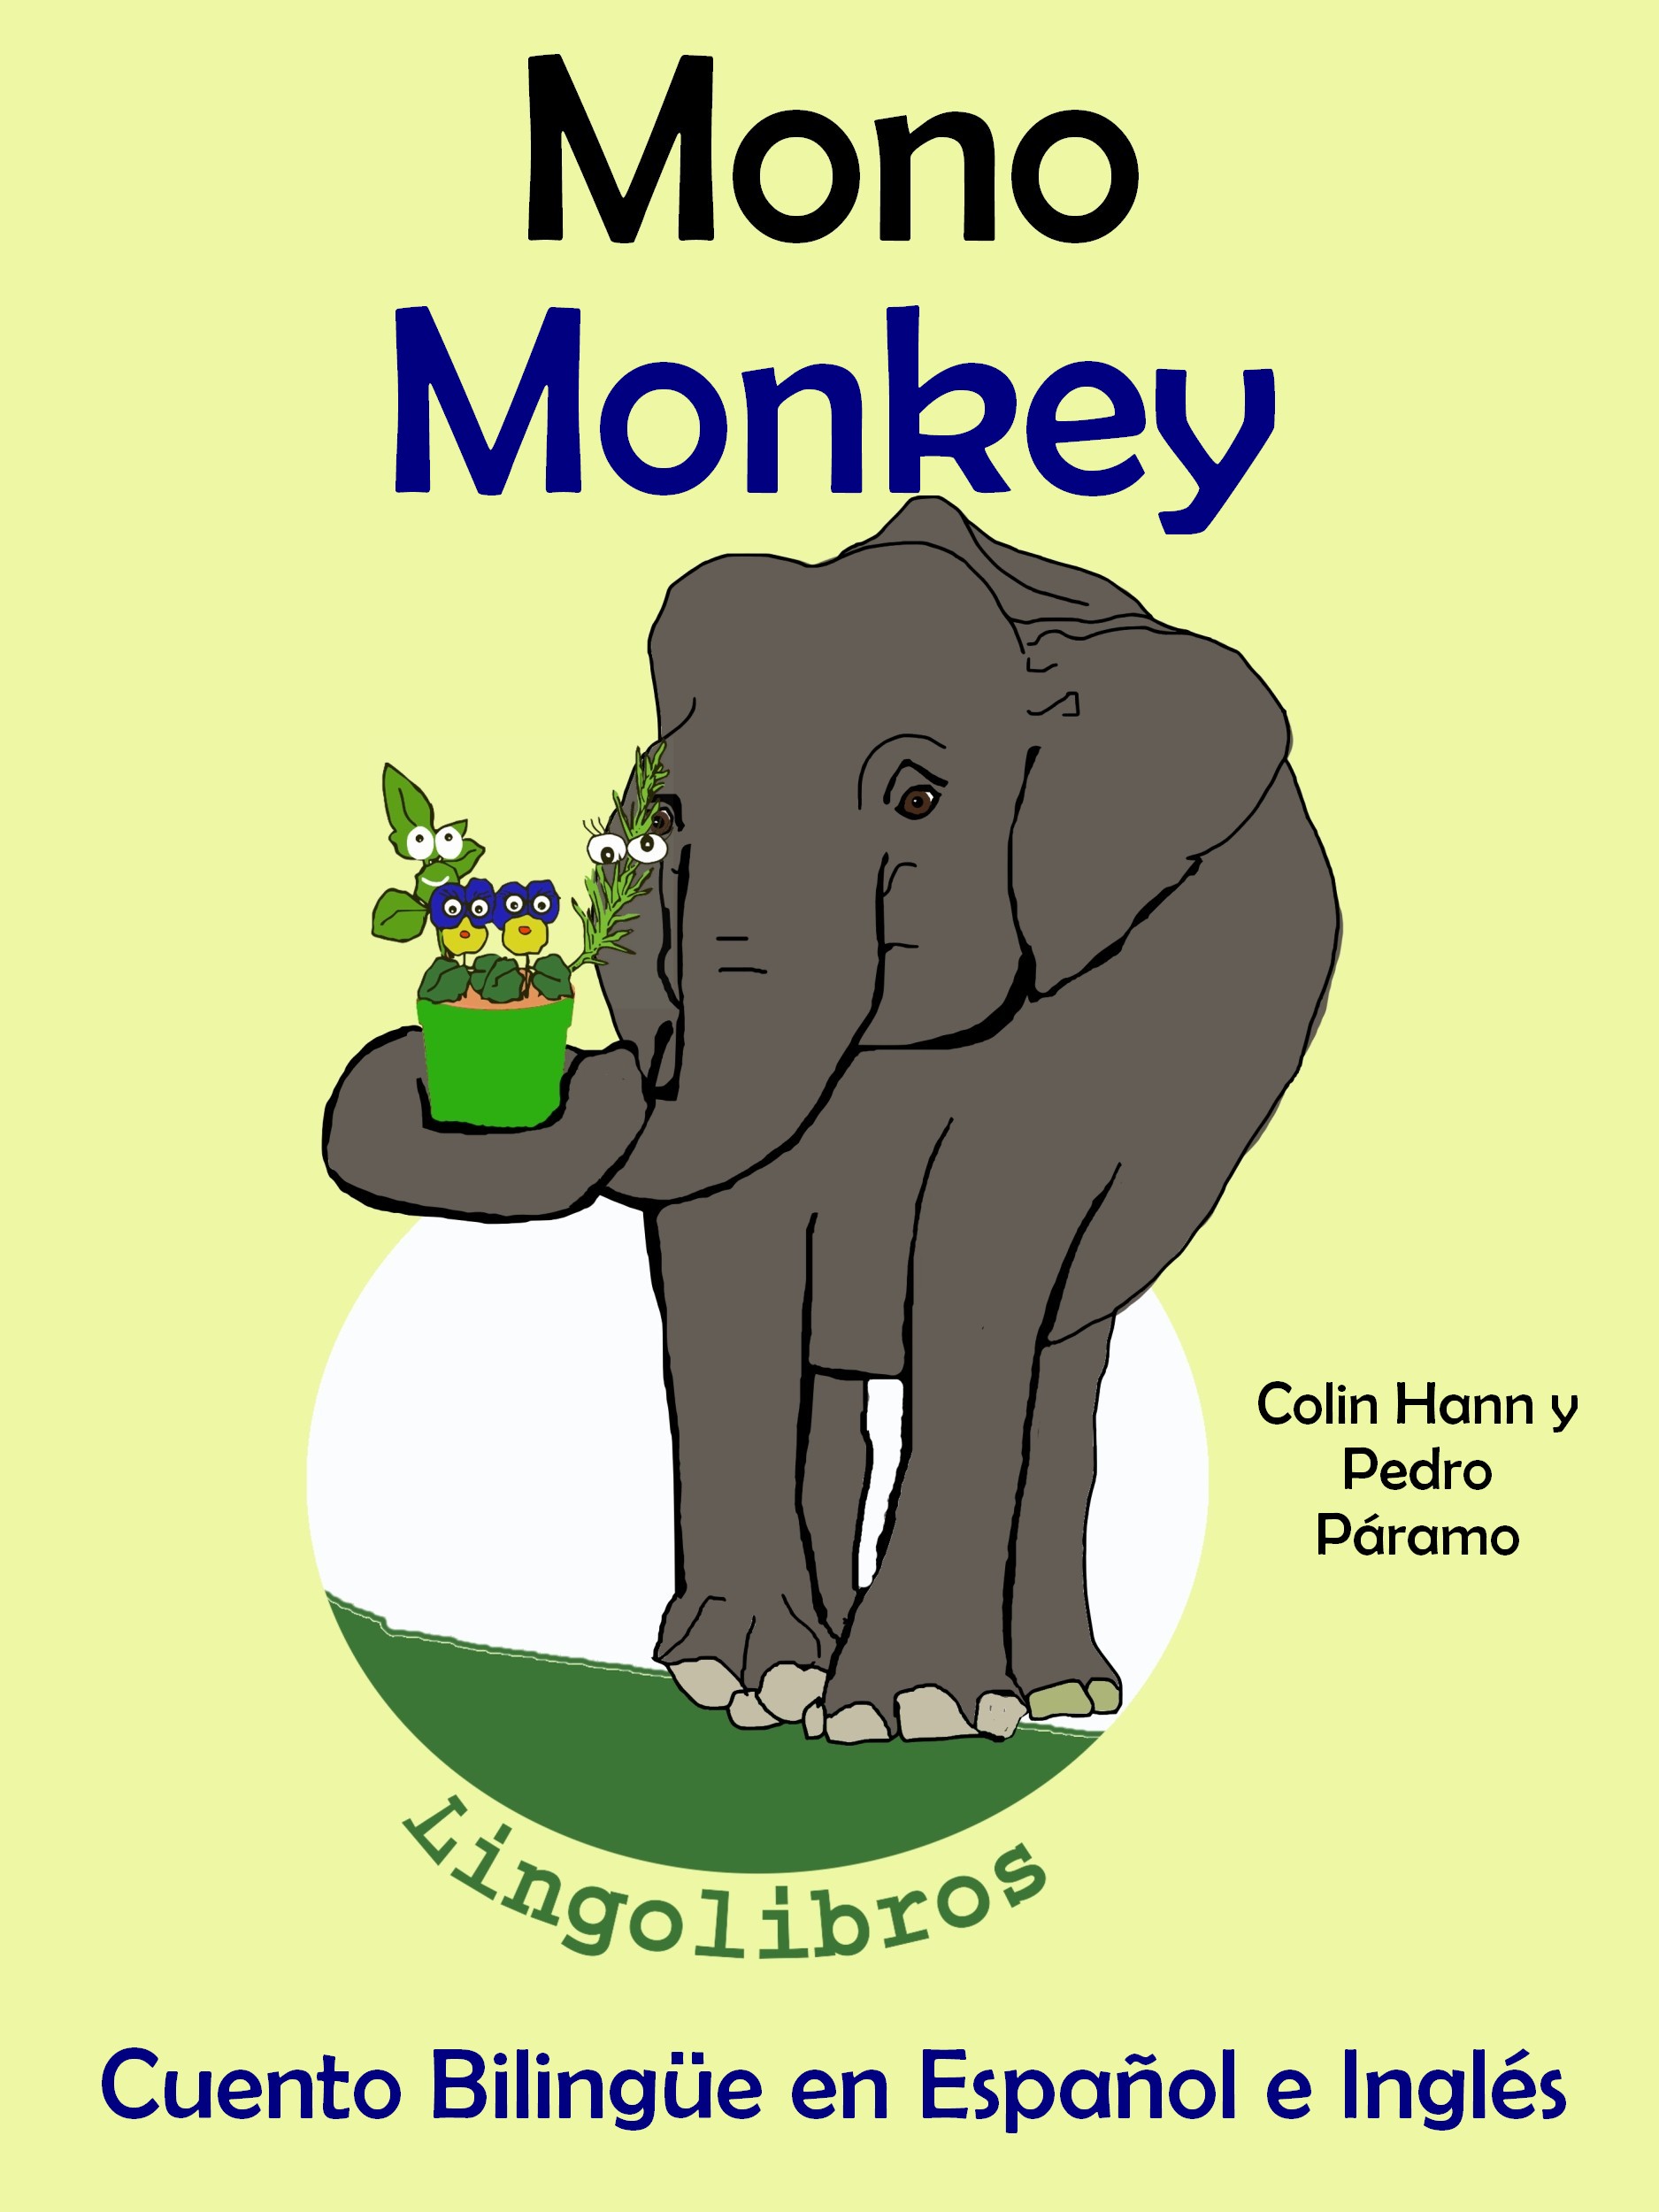 Perdóneme usted está Apretar Smashwords – Cuento Bilingüe en Español e Inglés: Mono - Monkey. Colección  Aprender Inglés. – a book by Pedro Paramo